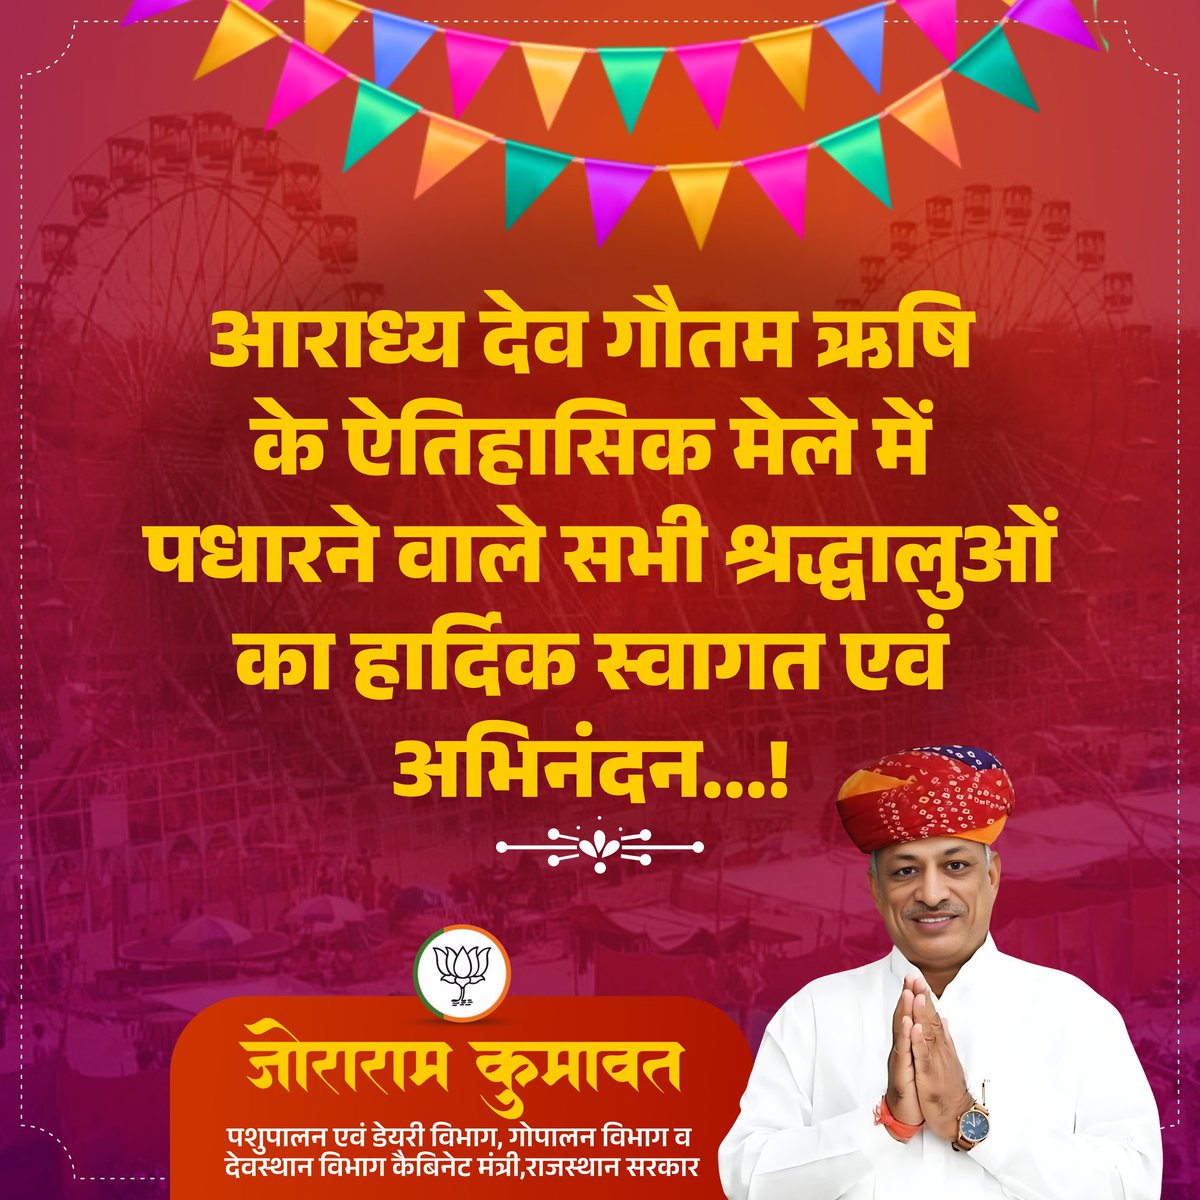 आराध्य देव गौतम ऋषि के ऐतिहासिक मेले में पधारने वाले सभी श्रद्धालुओं का हार्दिक स्वागत एवं अभिनंदन... #Rajasthan